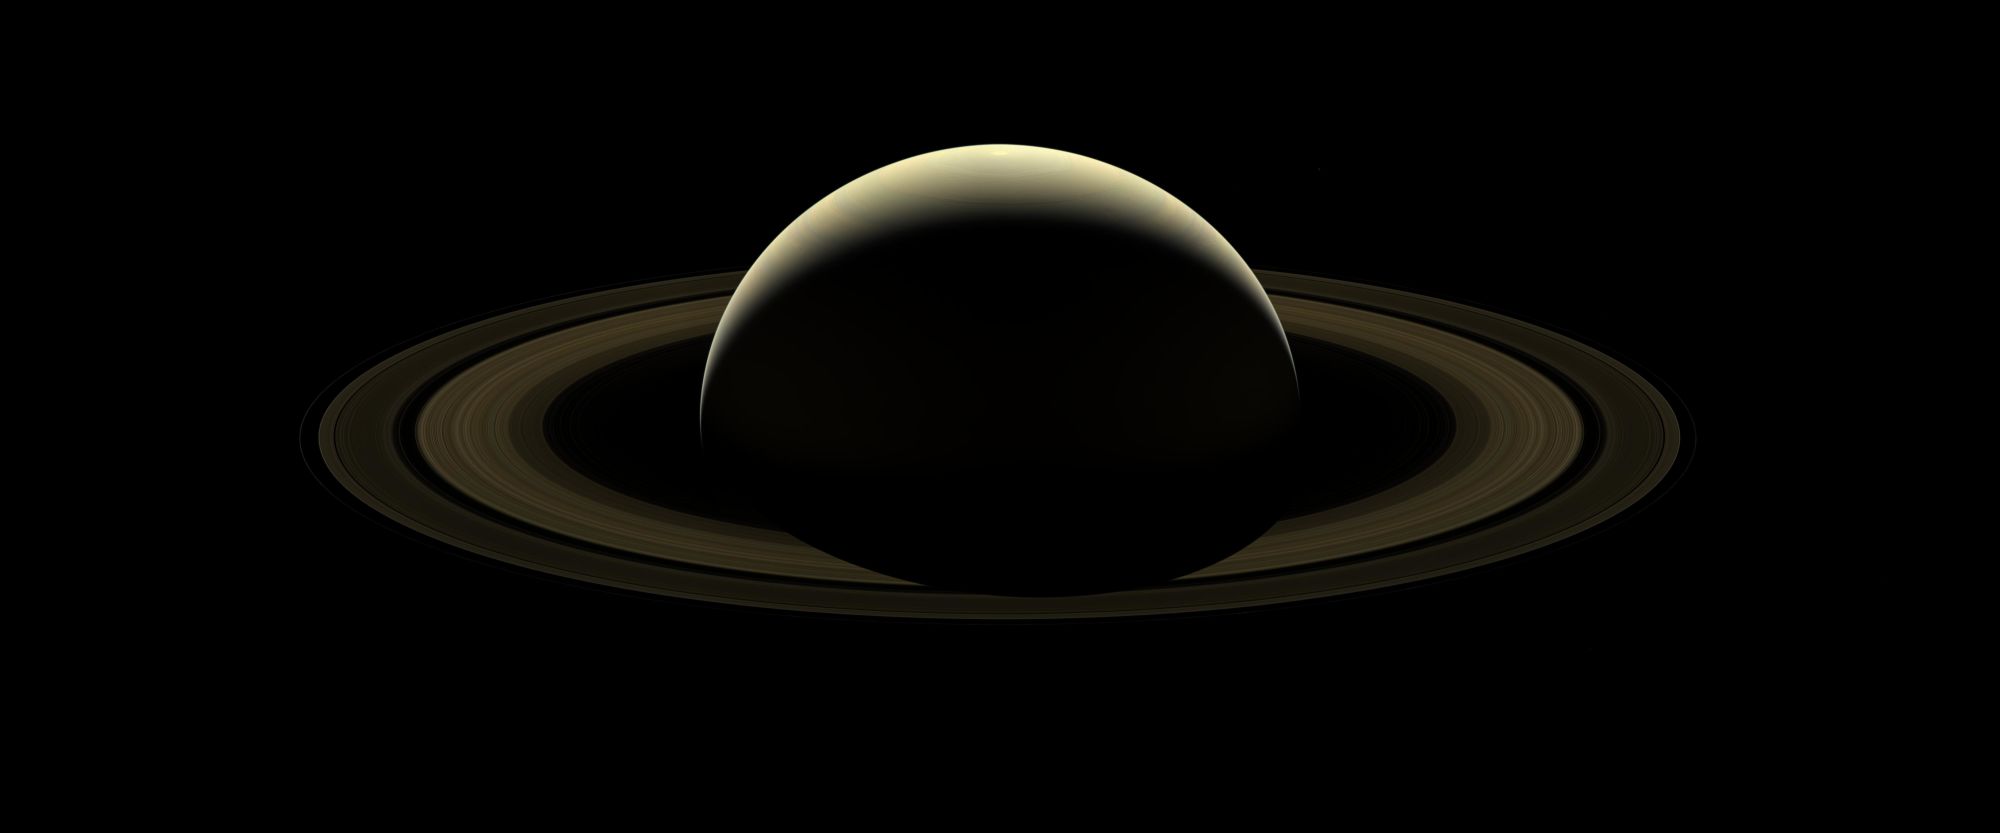 Ezt a fotót a Cassini űrszonda néhány nappal küldetésének vége előtt készítette a Szaturnuszról.